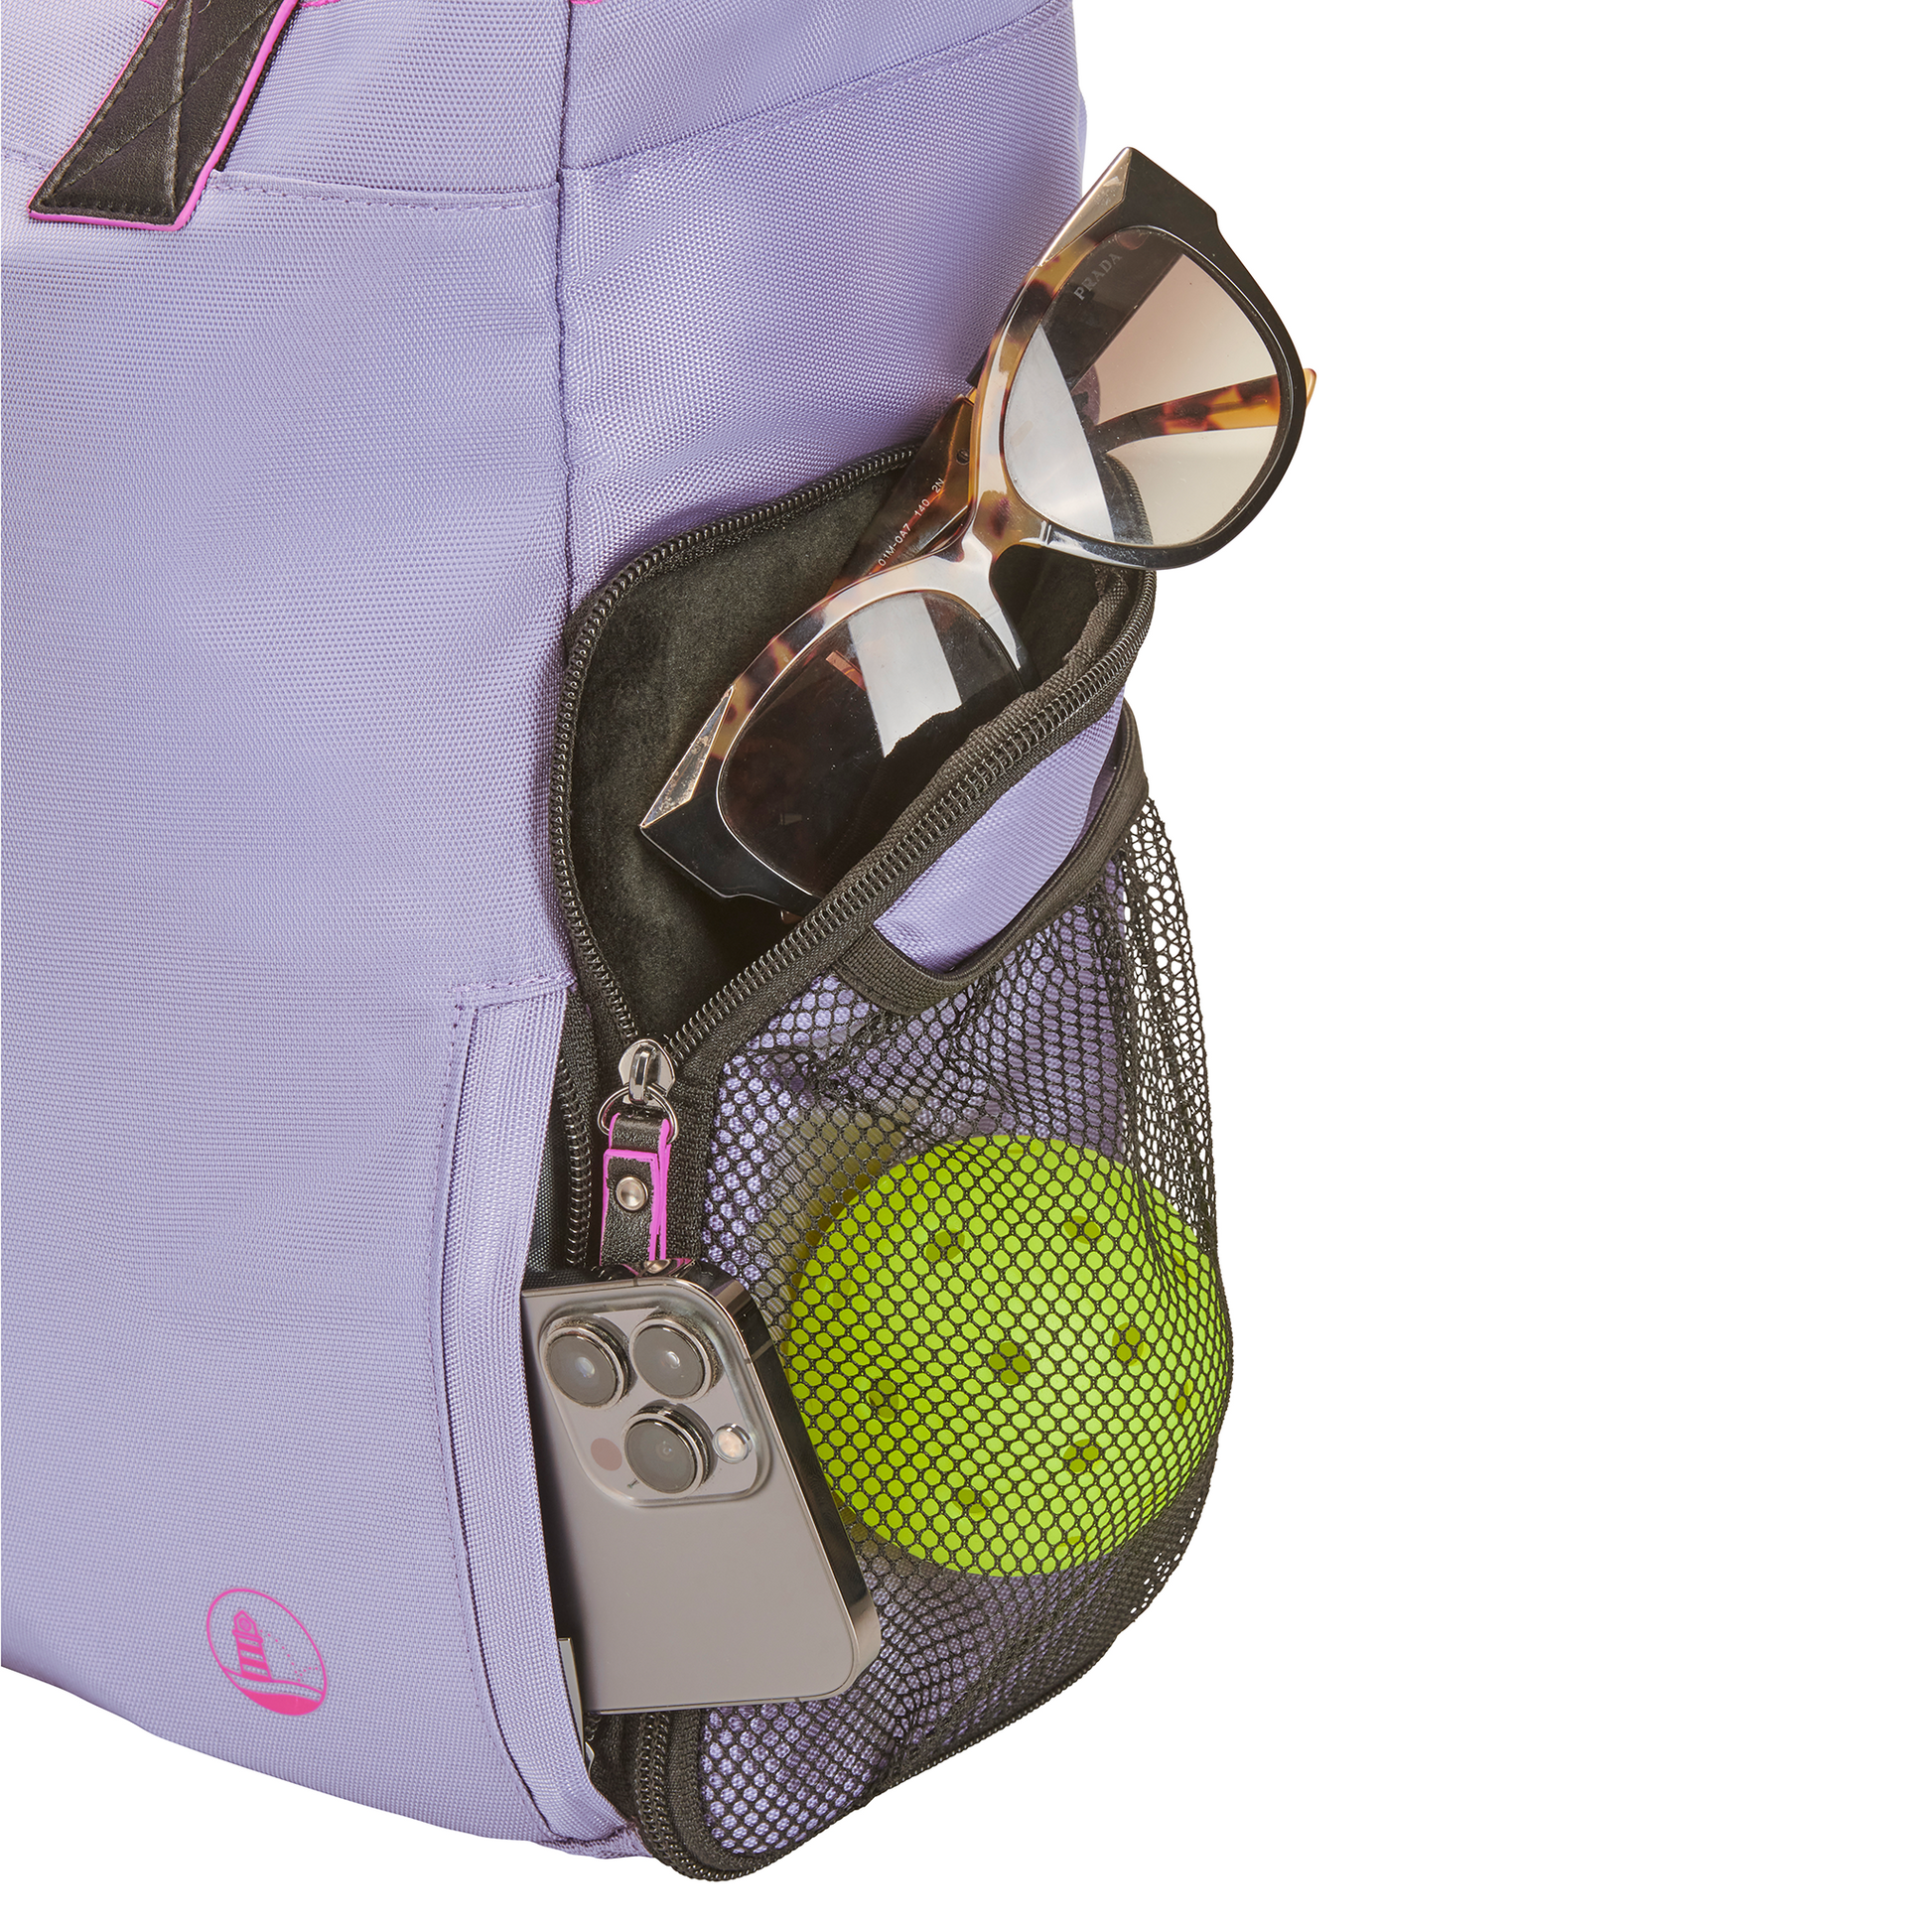 Women’s designer Pickleball Tote showing felt-lined pocket for sunglasses, zipper pocket for phone, and mesh pocket for balls